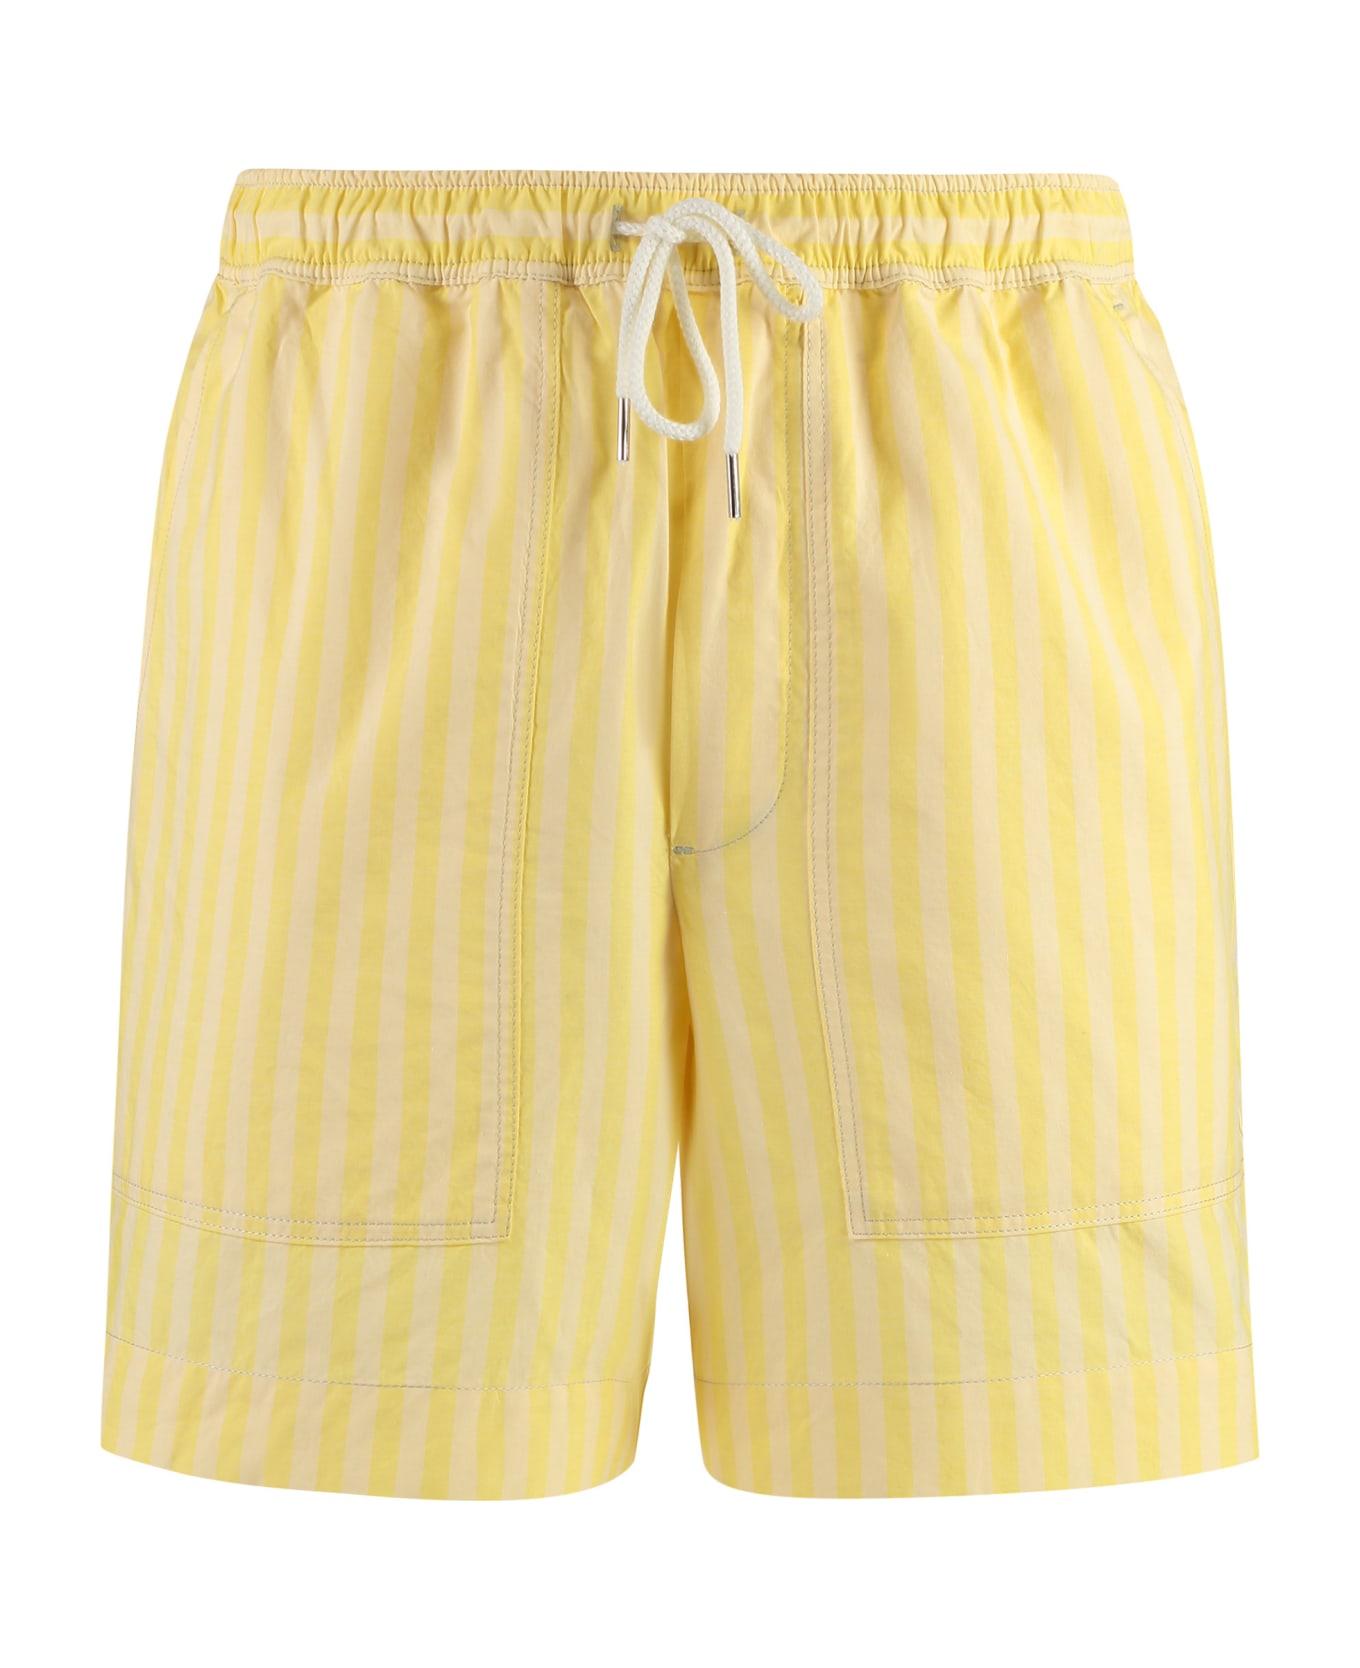 Maison Kitsuné Cotton Bermuda Shorts - Yellow